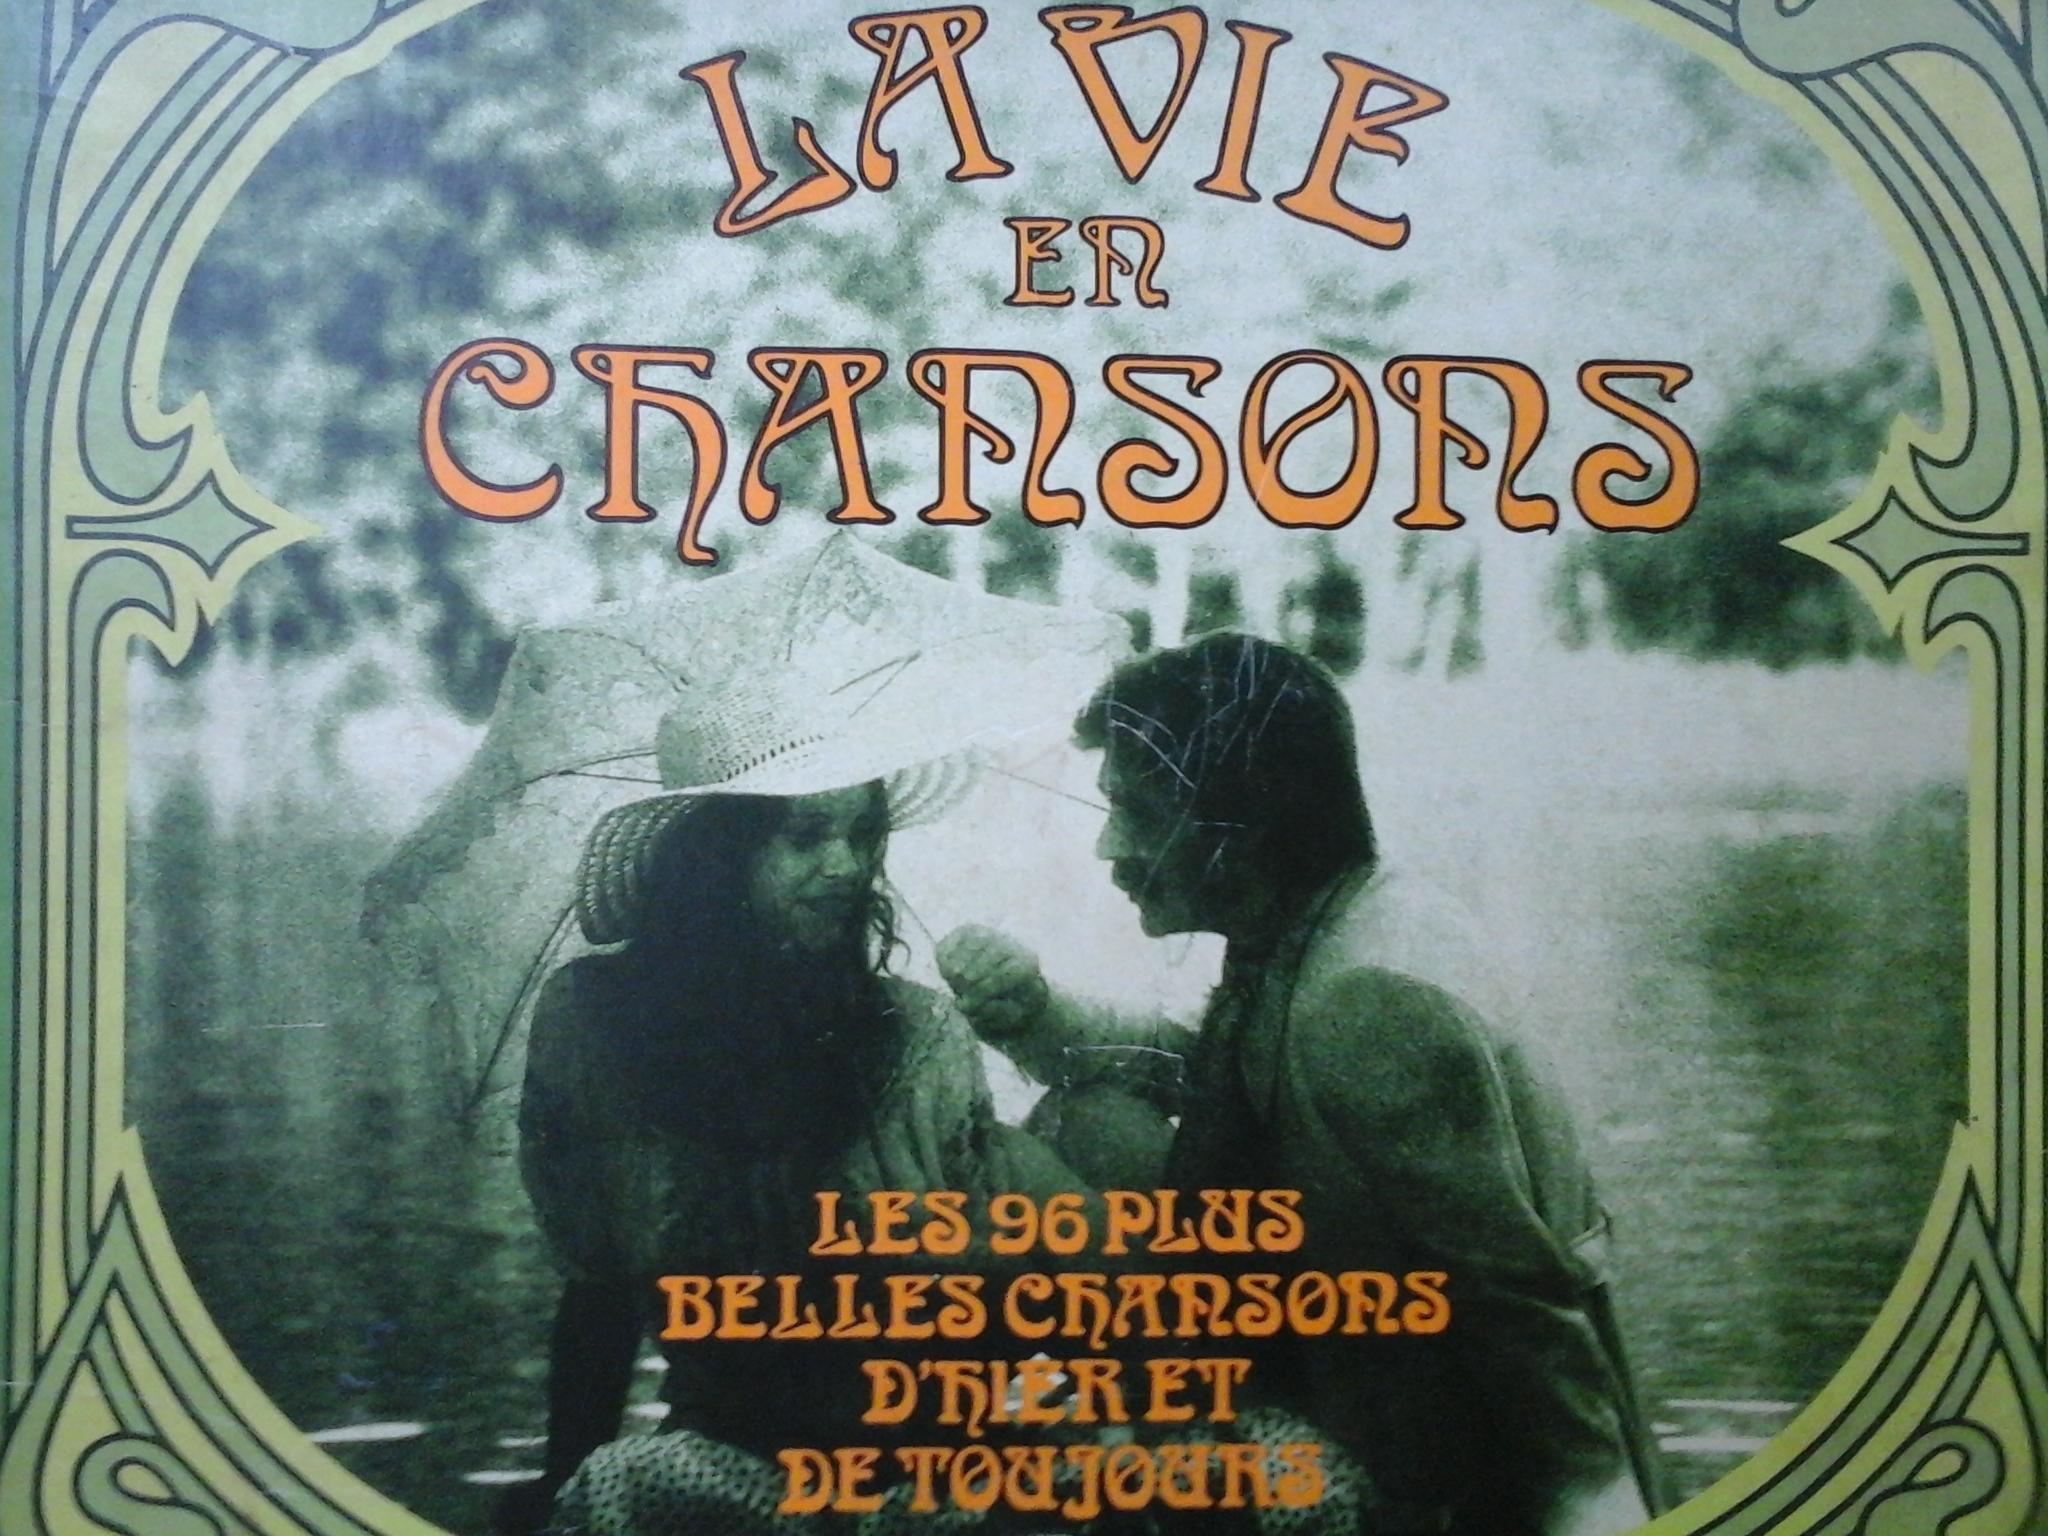 troc de troc vinyles chansons françaises. image 1